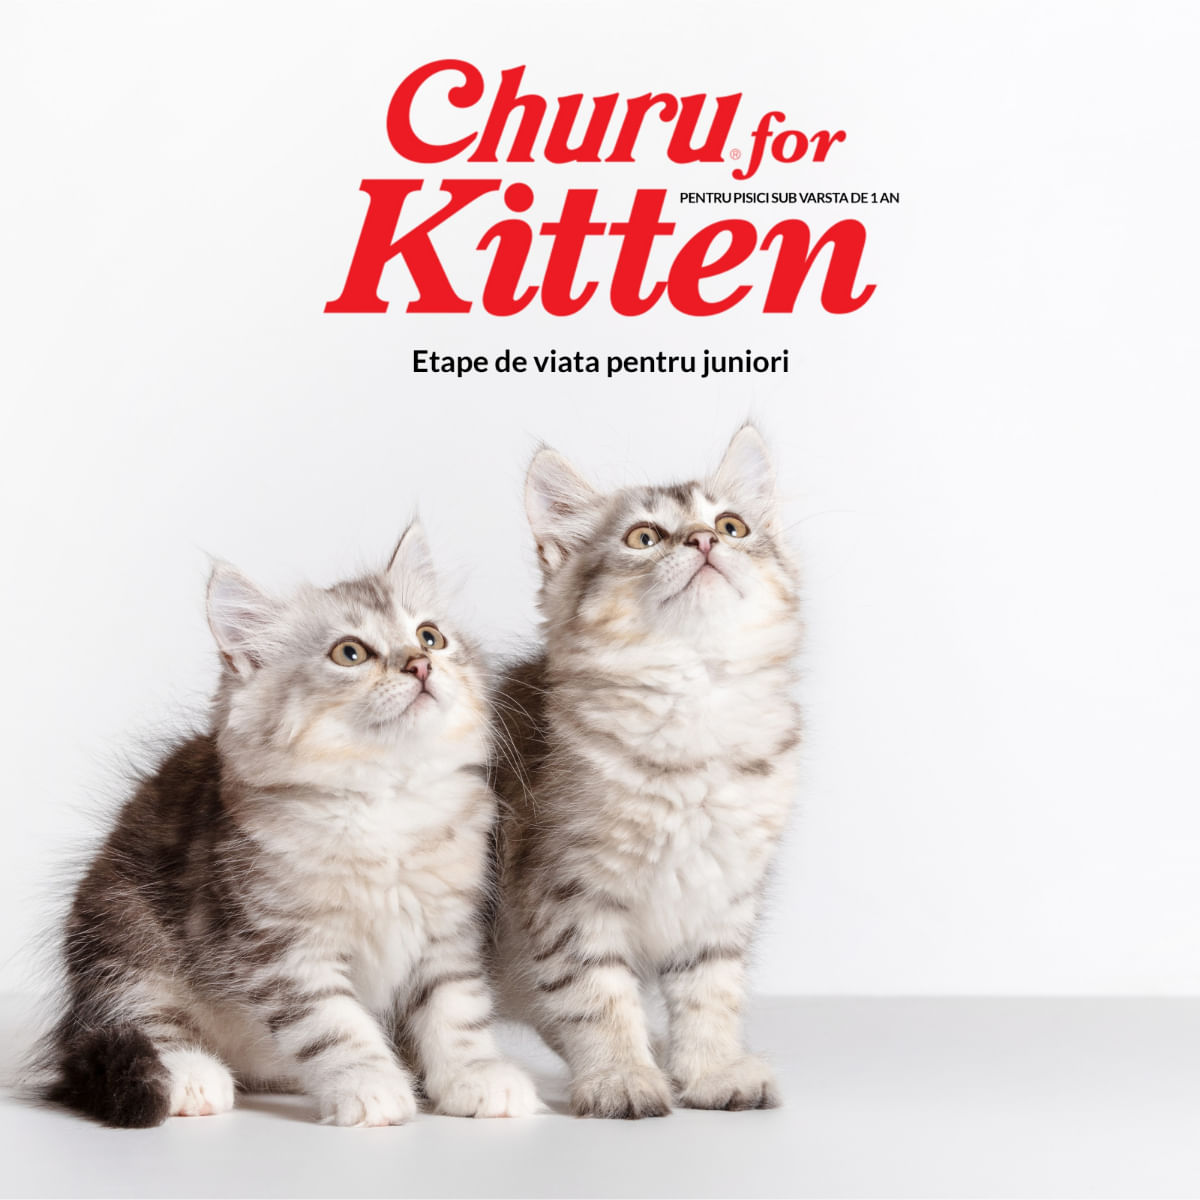 INABA Churu Kitten, Ton,, tub recompense fără cereale pisici junior, (piure) INABA Churu Kitten, Ton, plic, tub recompense fără cereale pisici junior, (piure), 56g